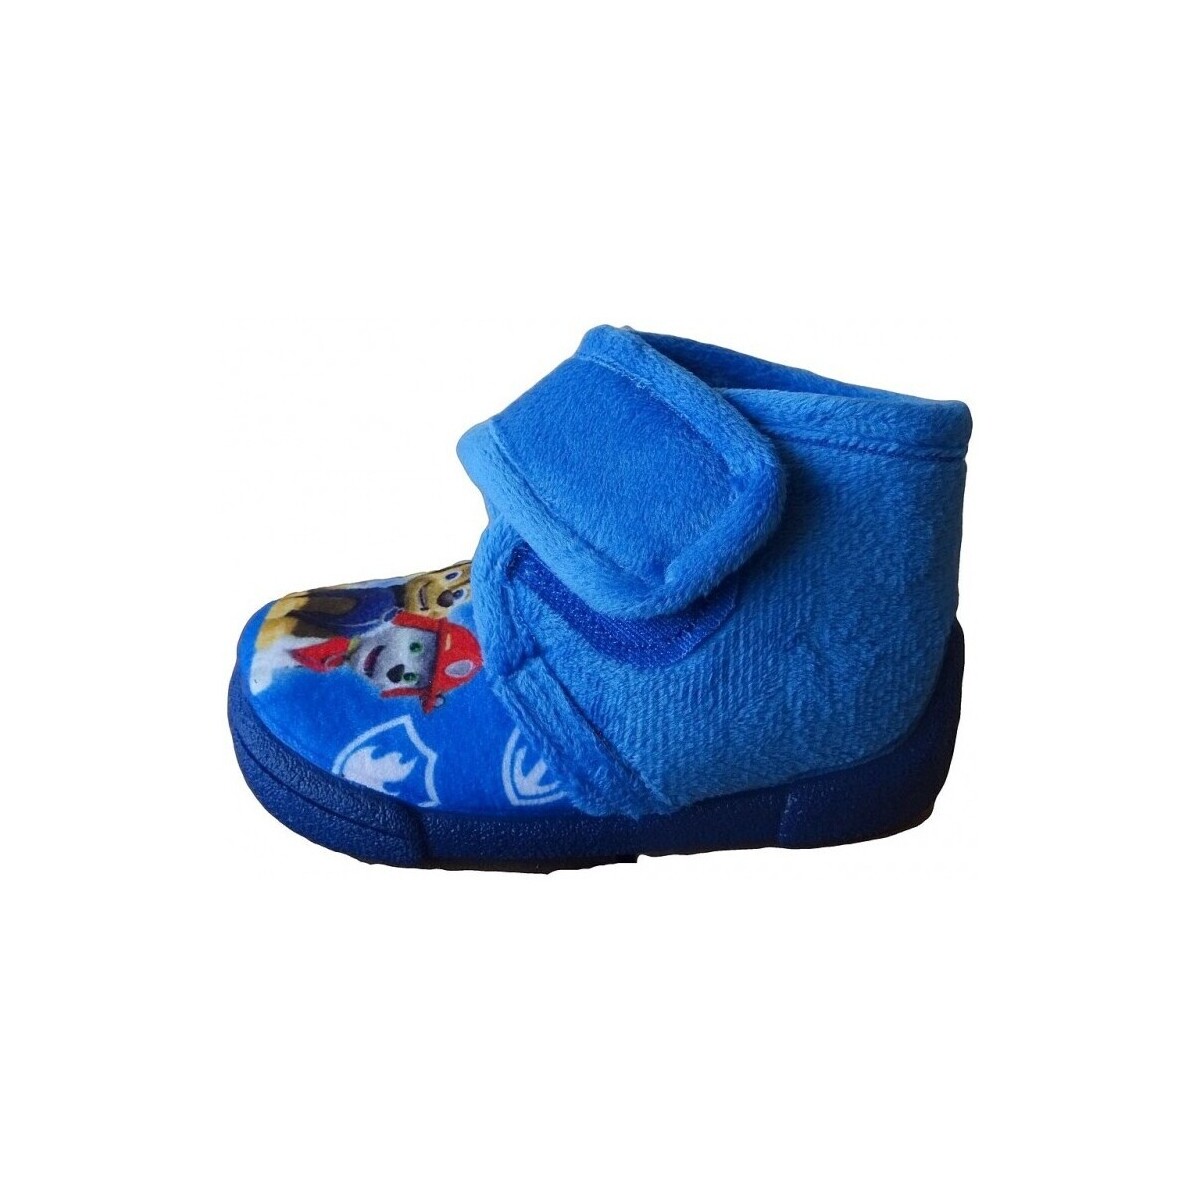 Topánky Čižmy Colores 22403-18 Modrá